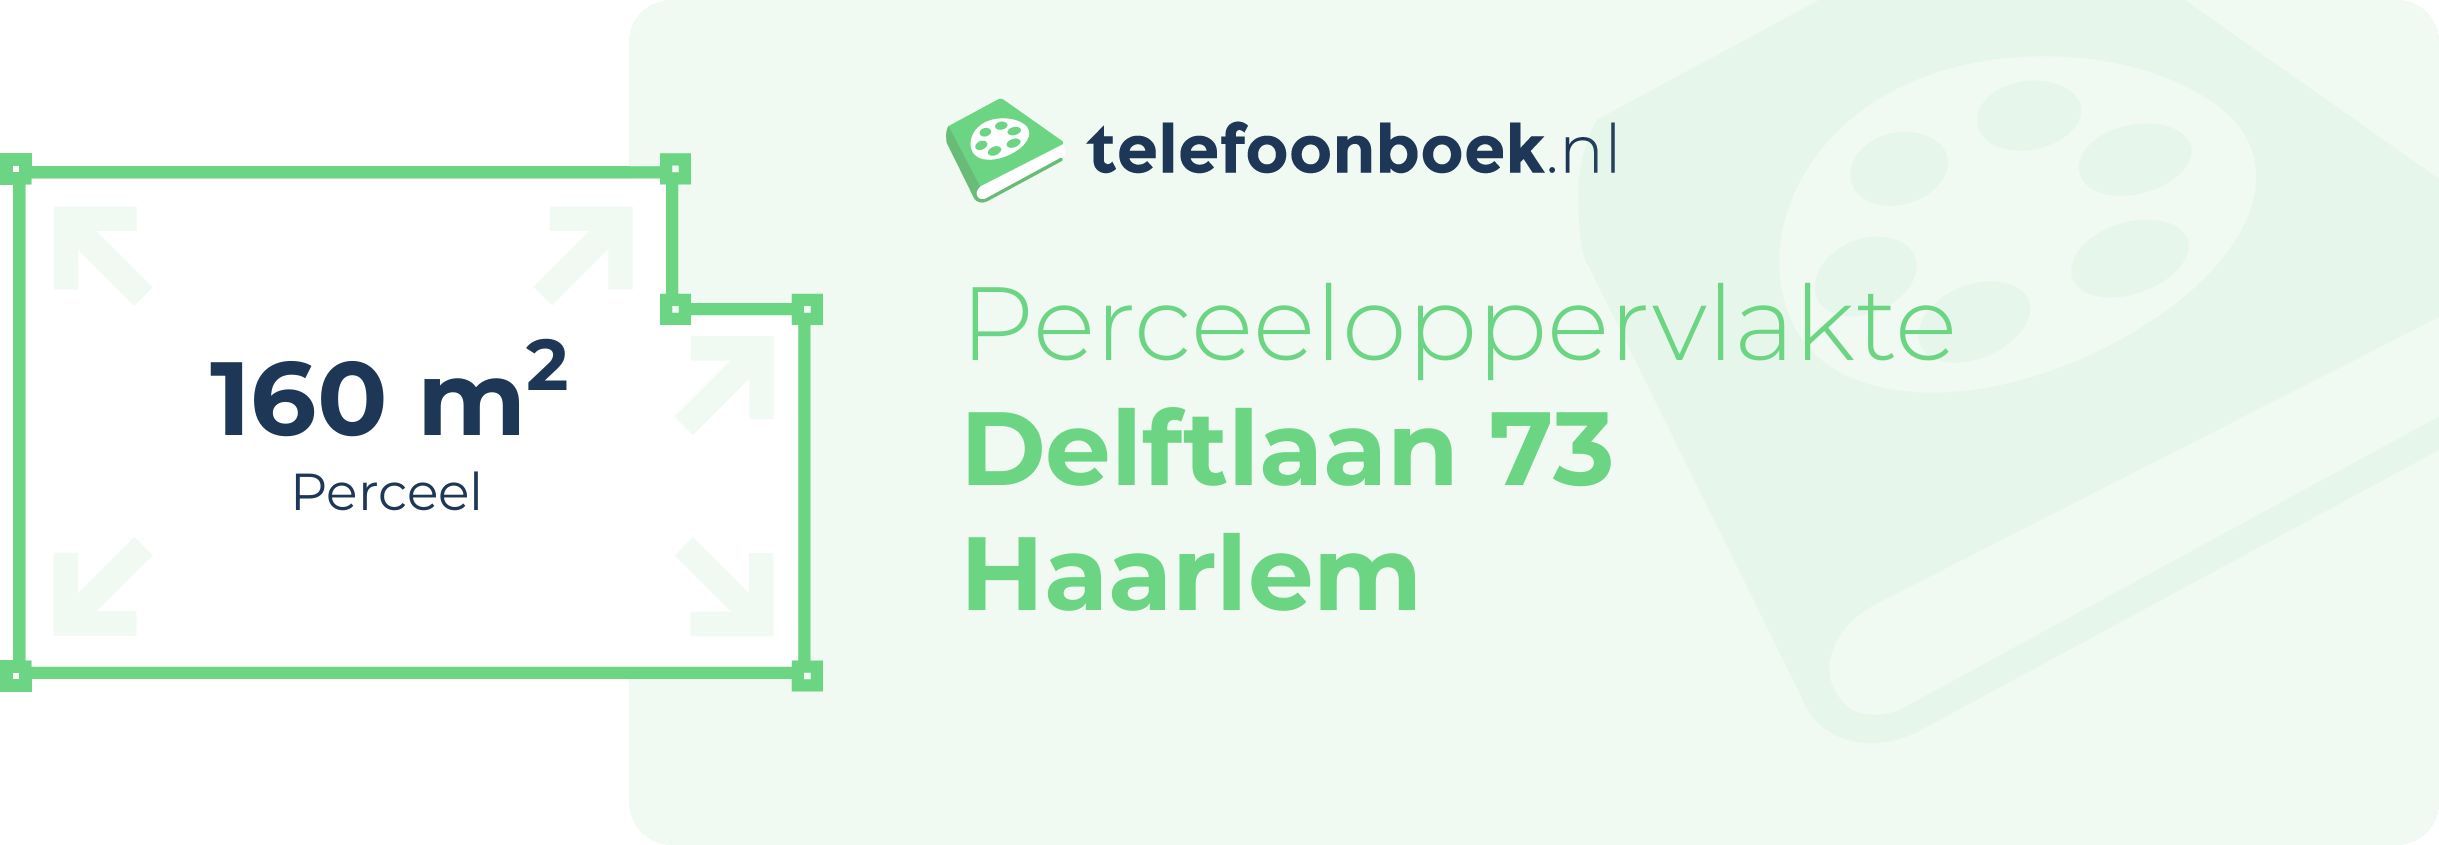 Perceeloppervlakte Delftlaan 73 Haarlem